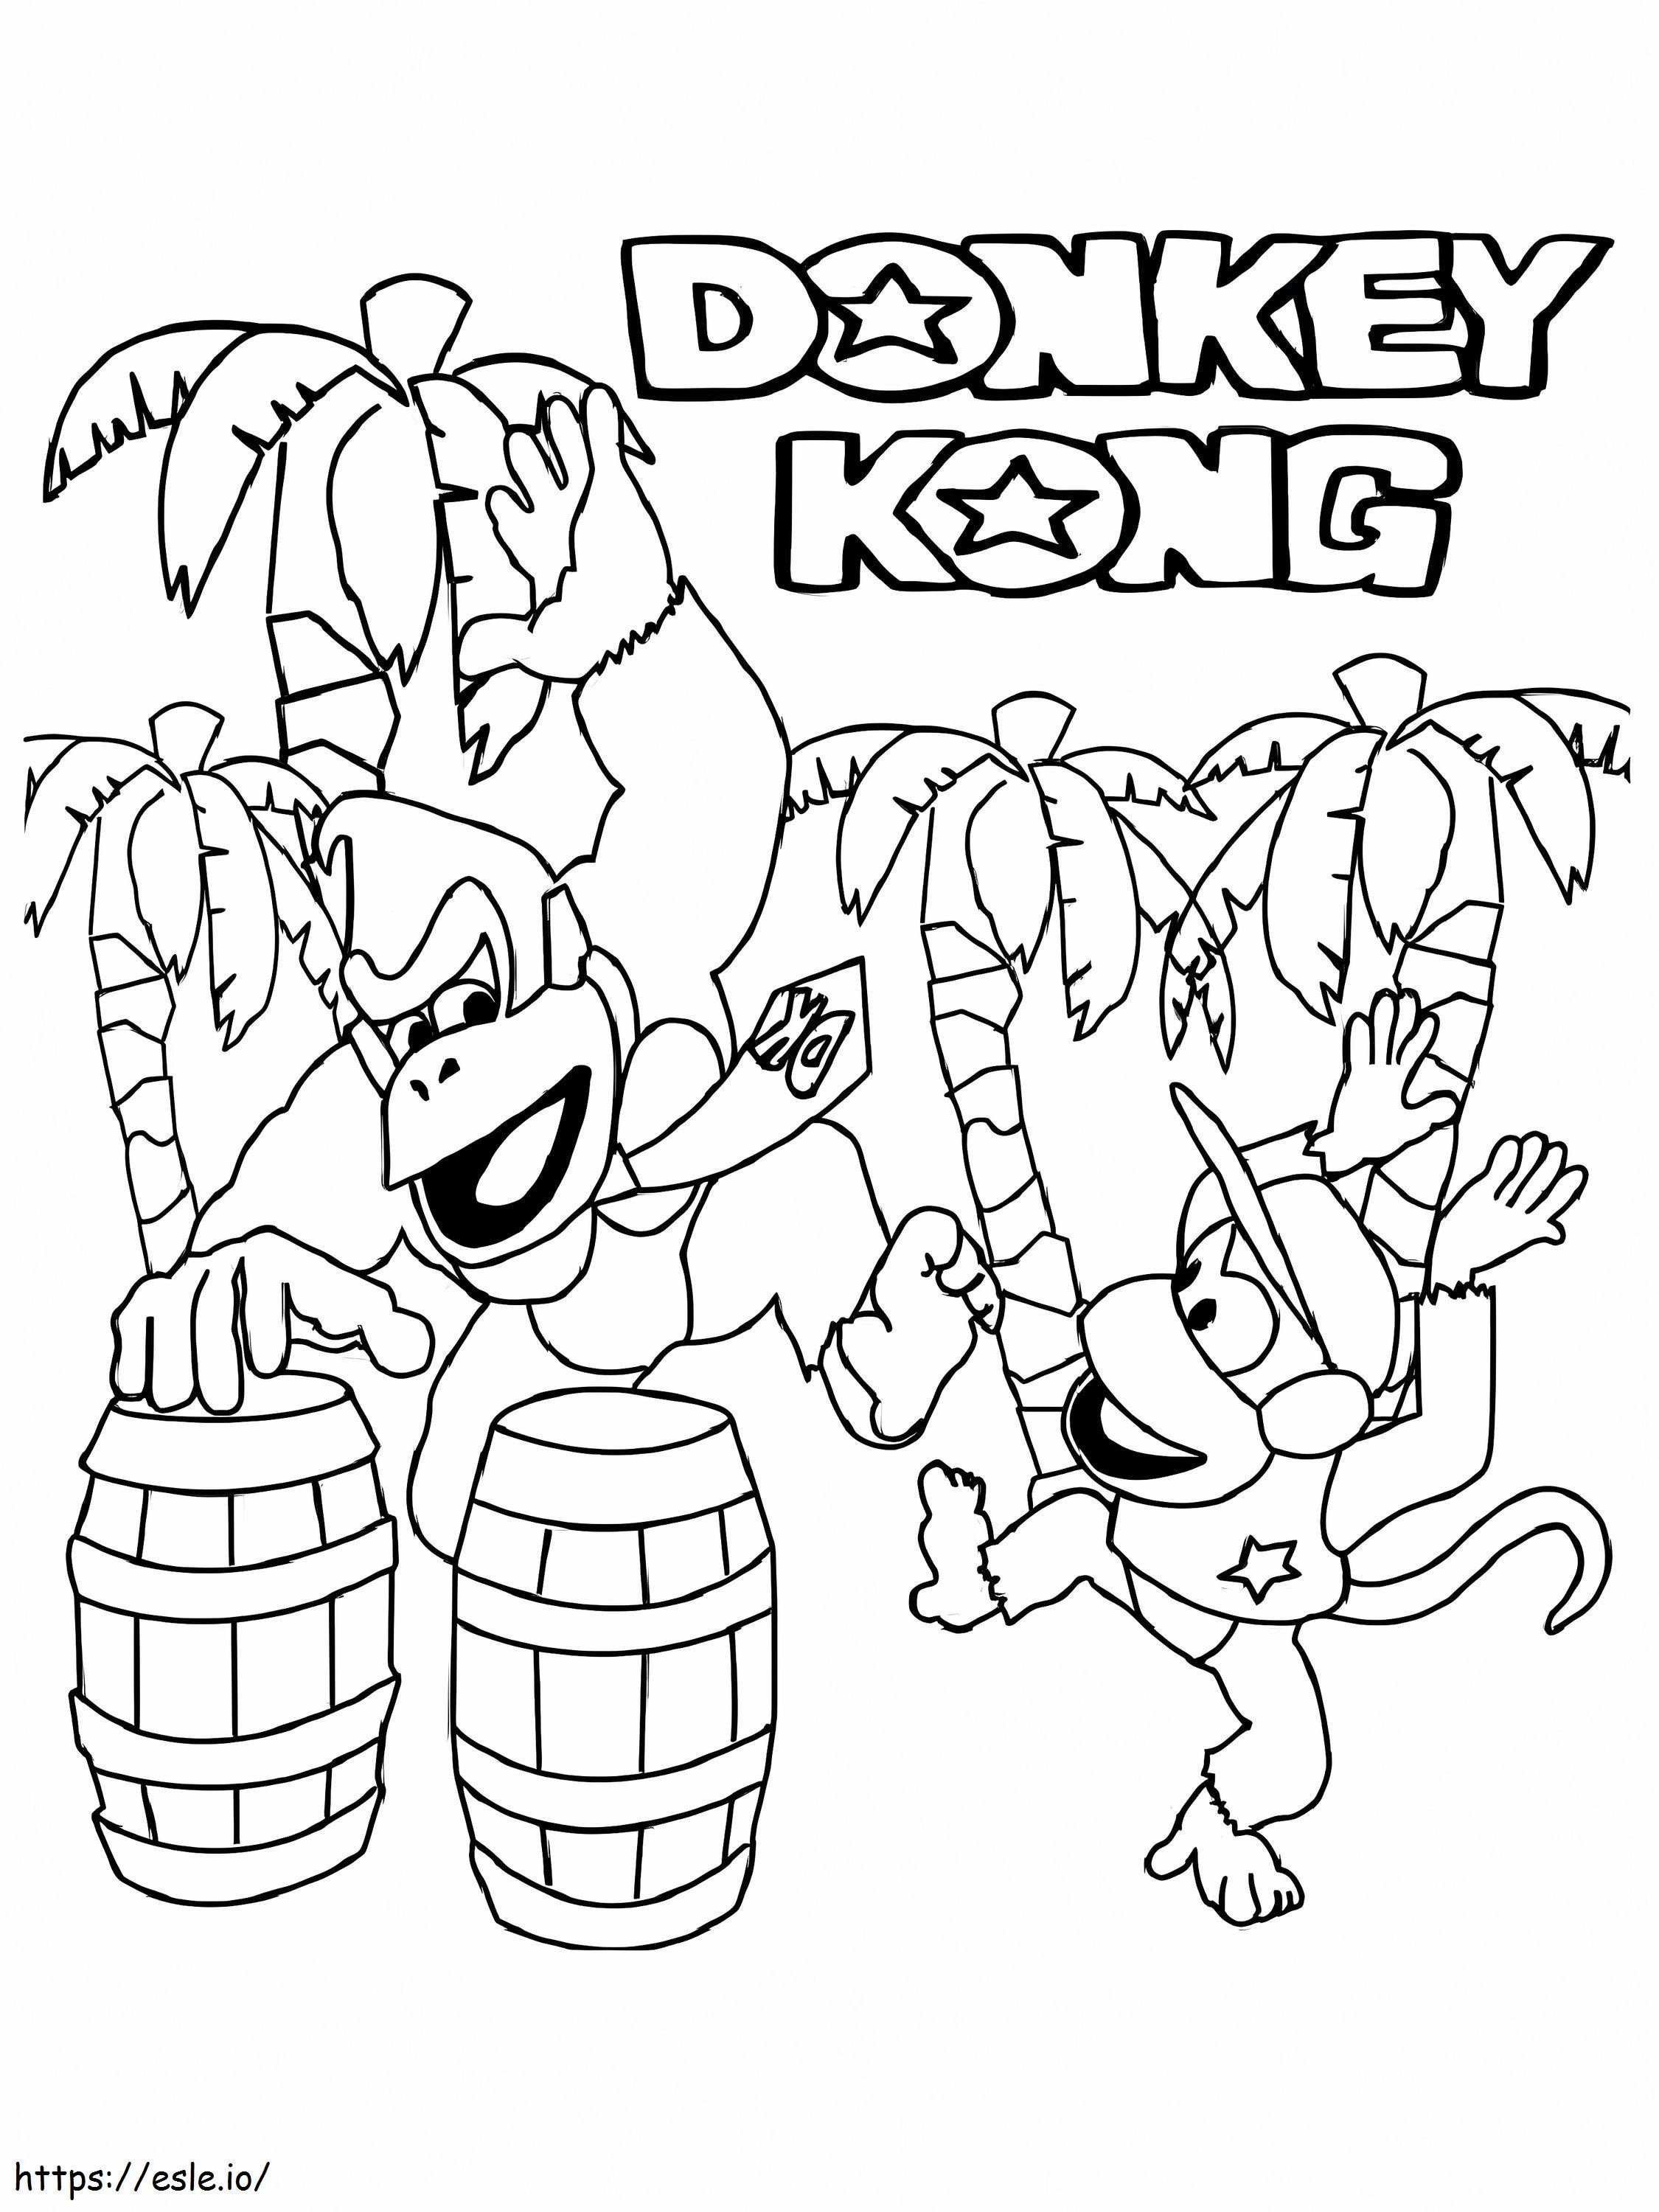 Donkey Kong e Diddy Kong Bailando da colorare